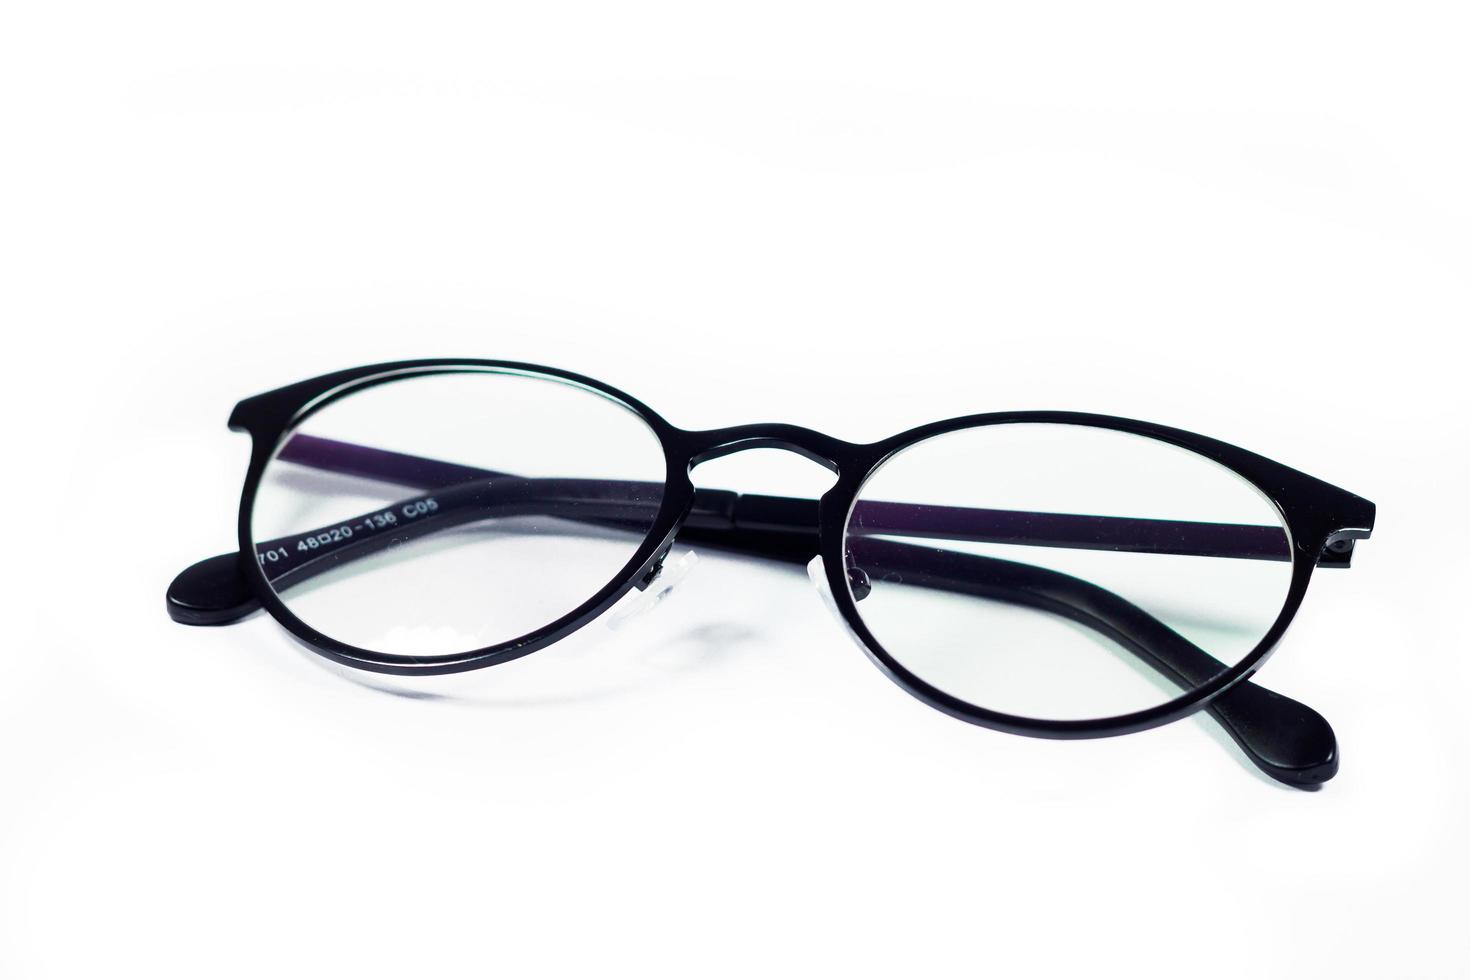 Eyeglasses isolated on a white background photo